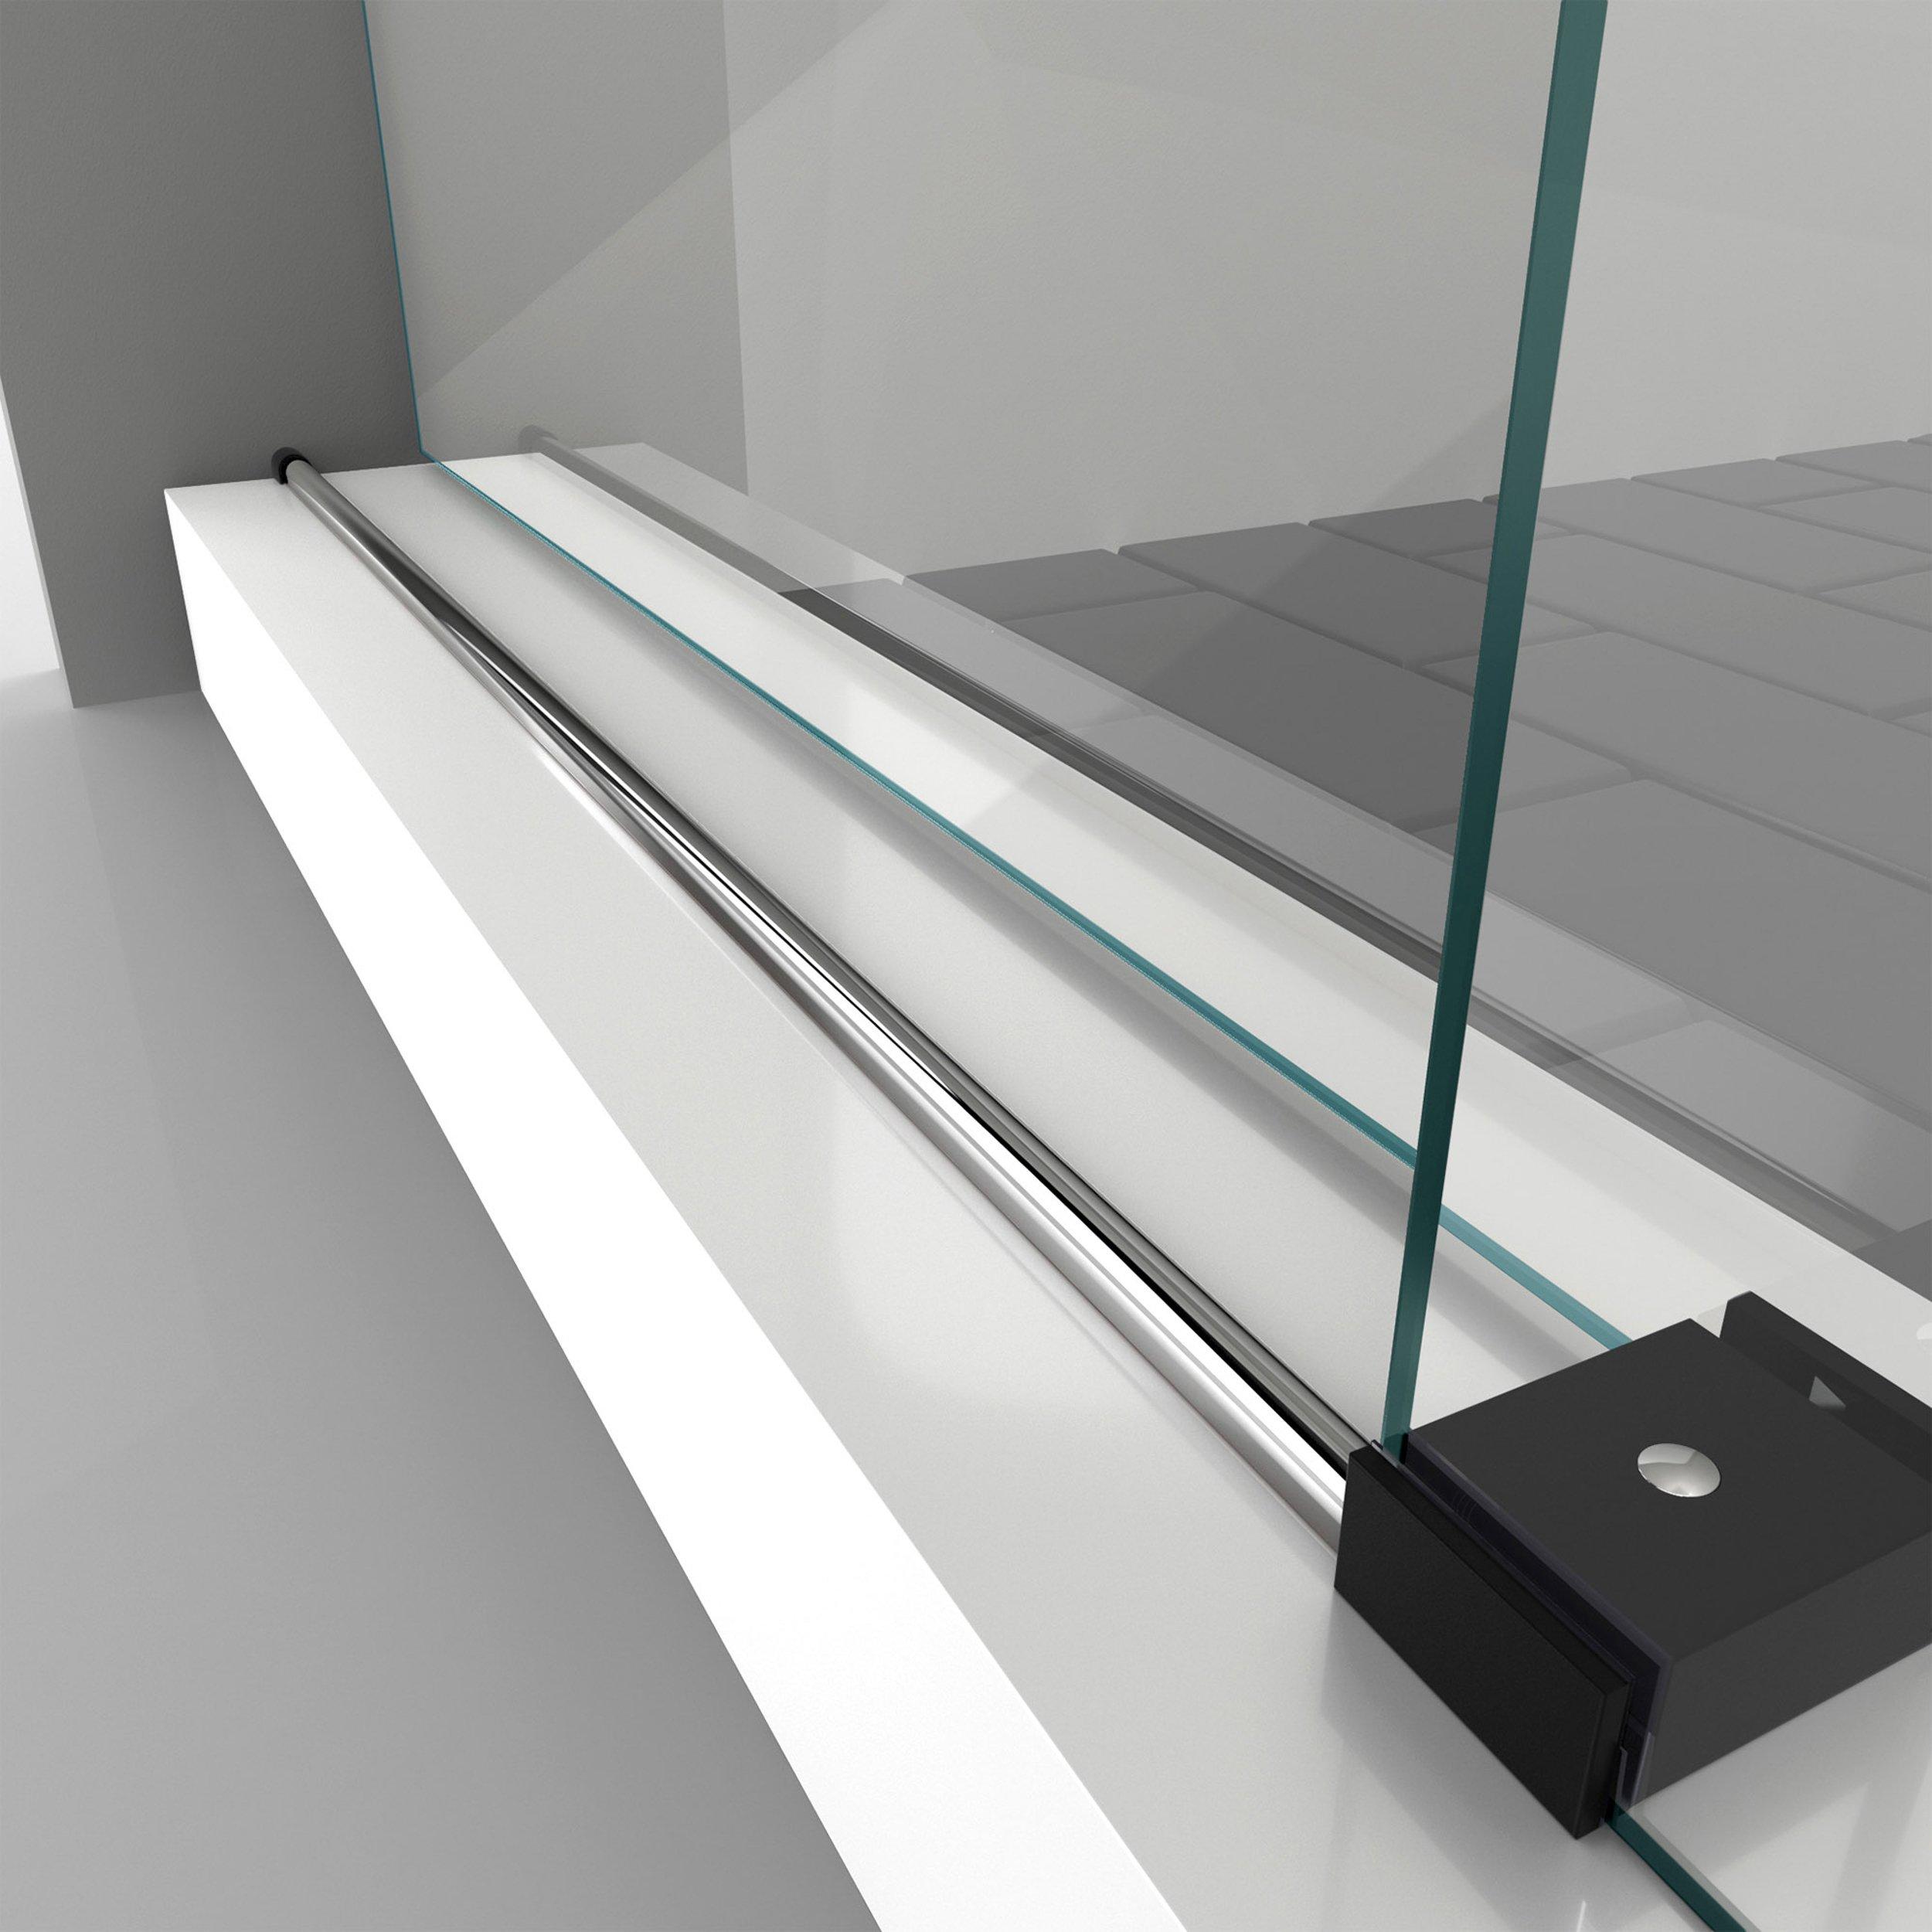 Enigma-XO Tuxedo Frameless Clear Glass Sliding Shower Door